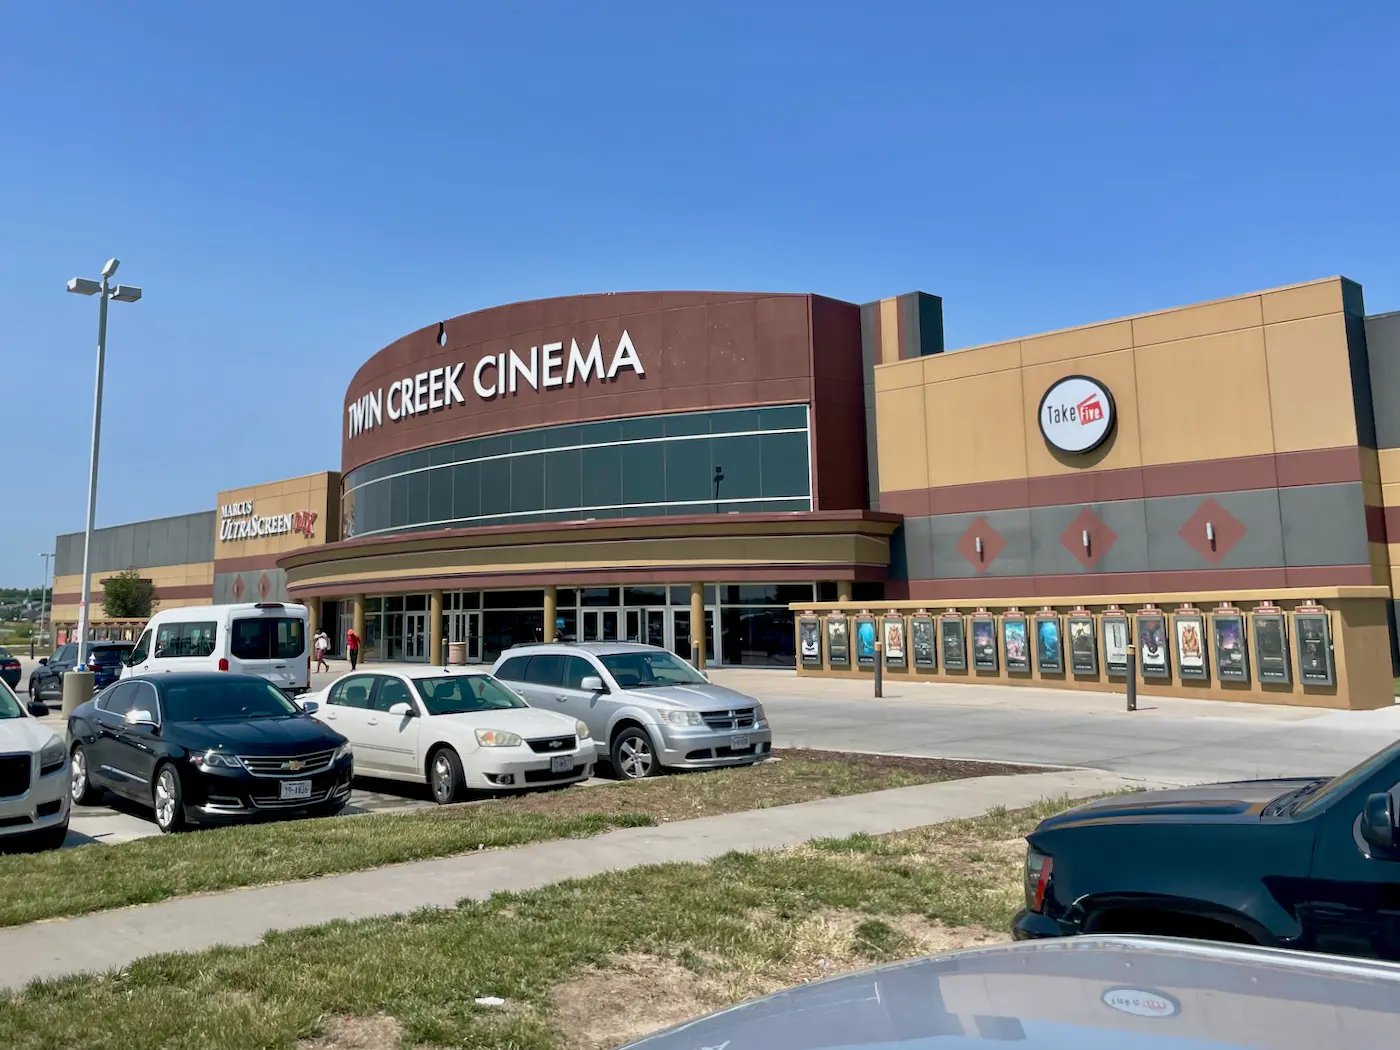 Twin Creek Cinema in Bellevue, Nebraska